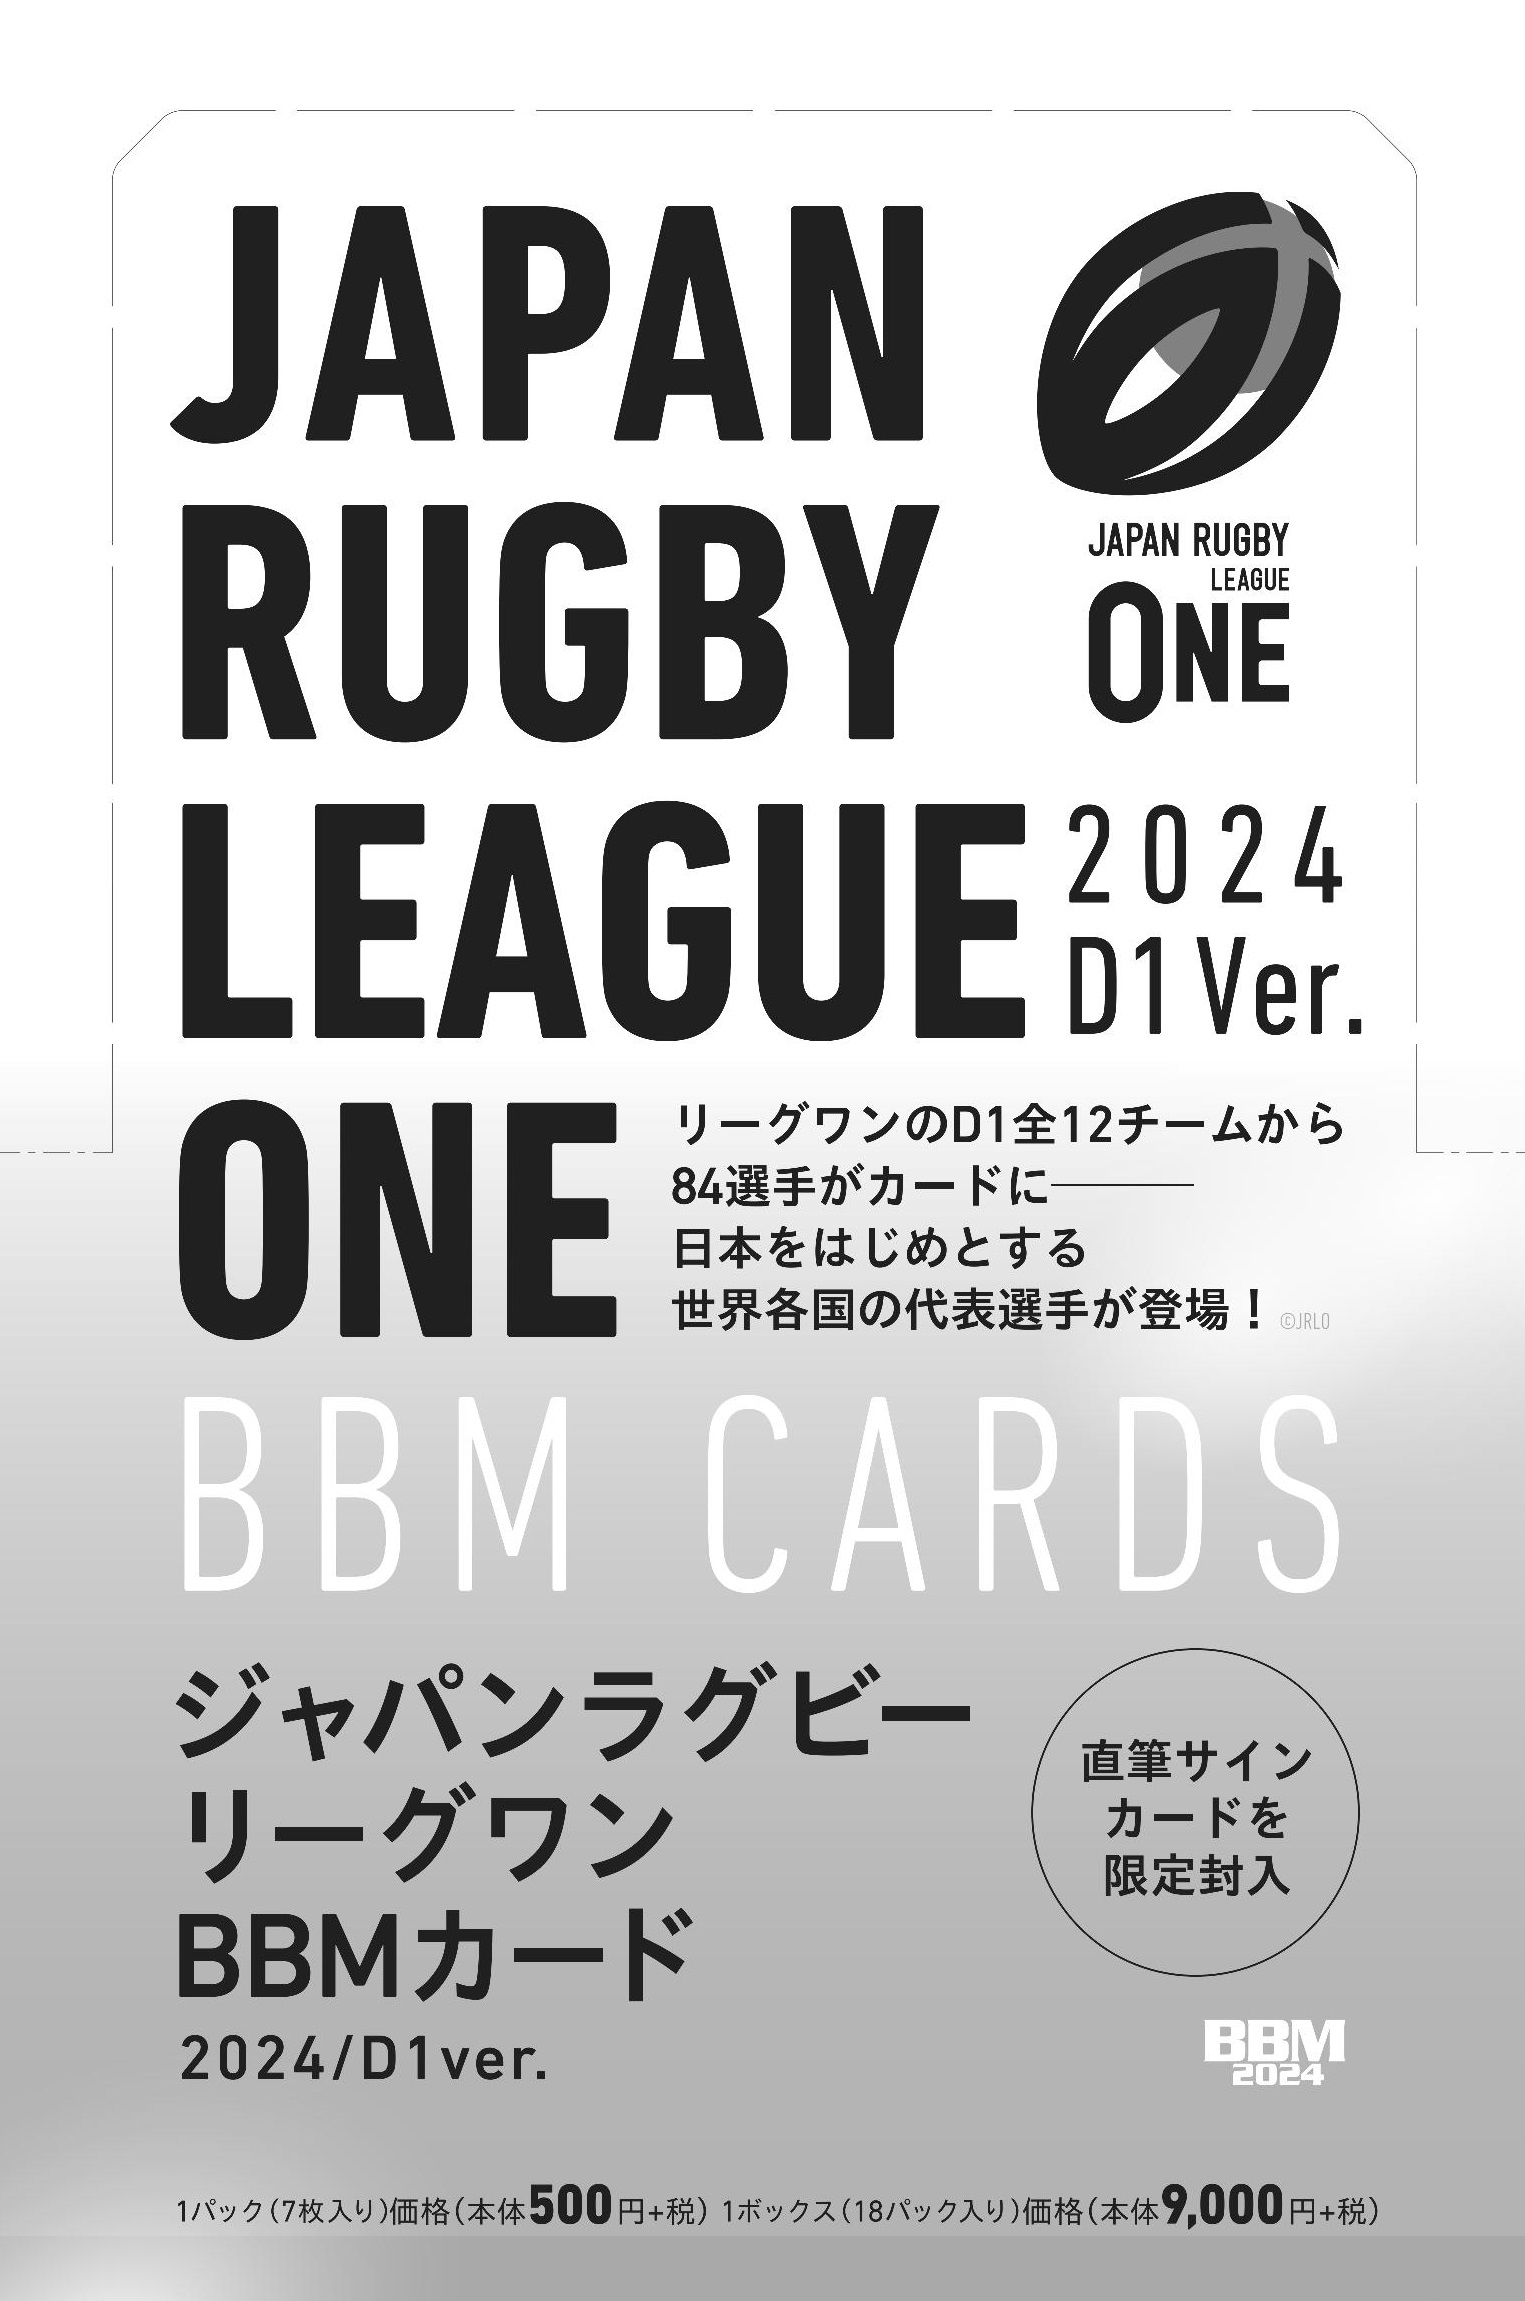 🏈 ジャパンラグビーリーグワン BBMカード2024/D1 Ver.【製品情報 